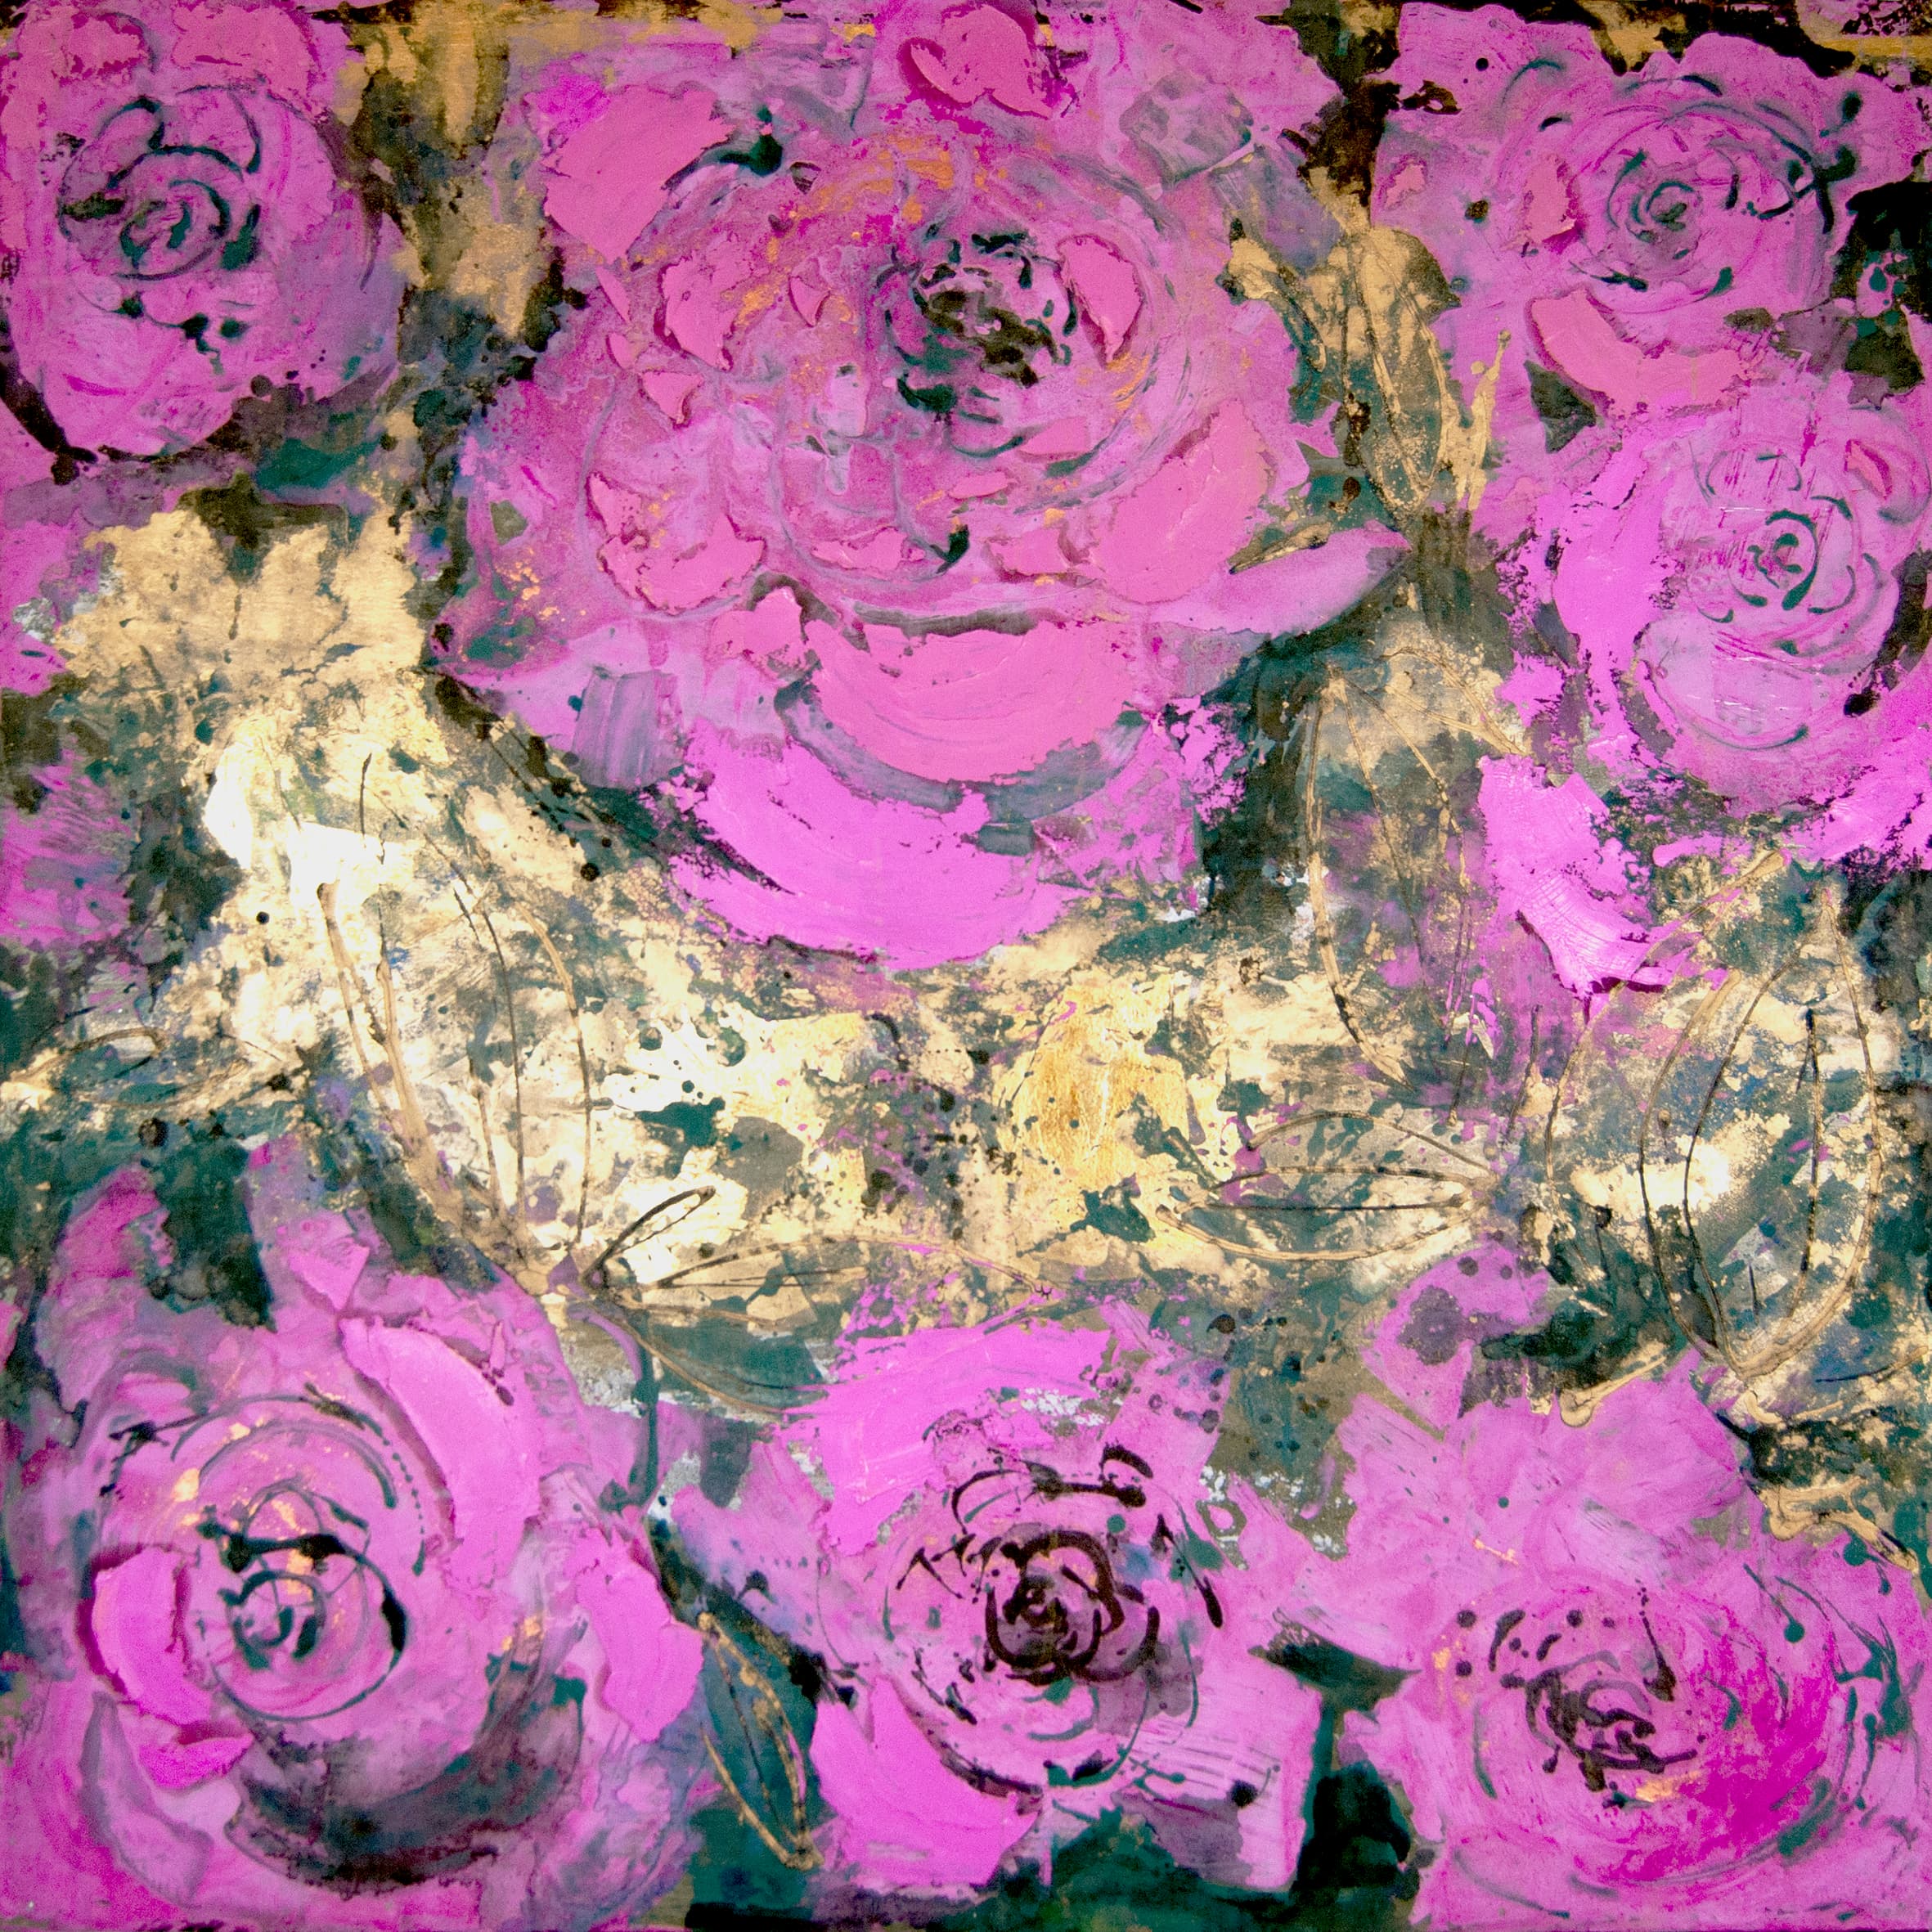 Rosas rosa. 1 x 1 metros. - Técnica mixta sobre tabla. Pintura de rosas rosa desde un punto de vista cenital y se puede ver entre las rosas campo de color dorado amarillento con pizcas de color verde.